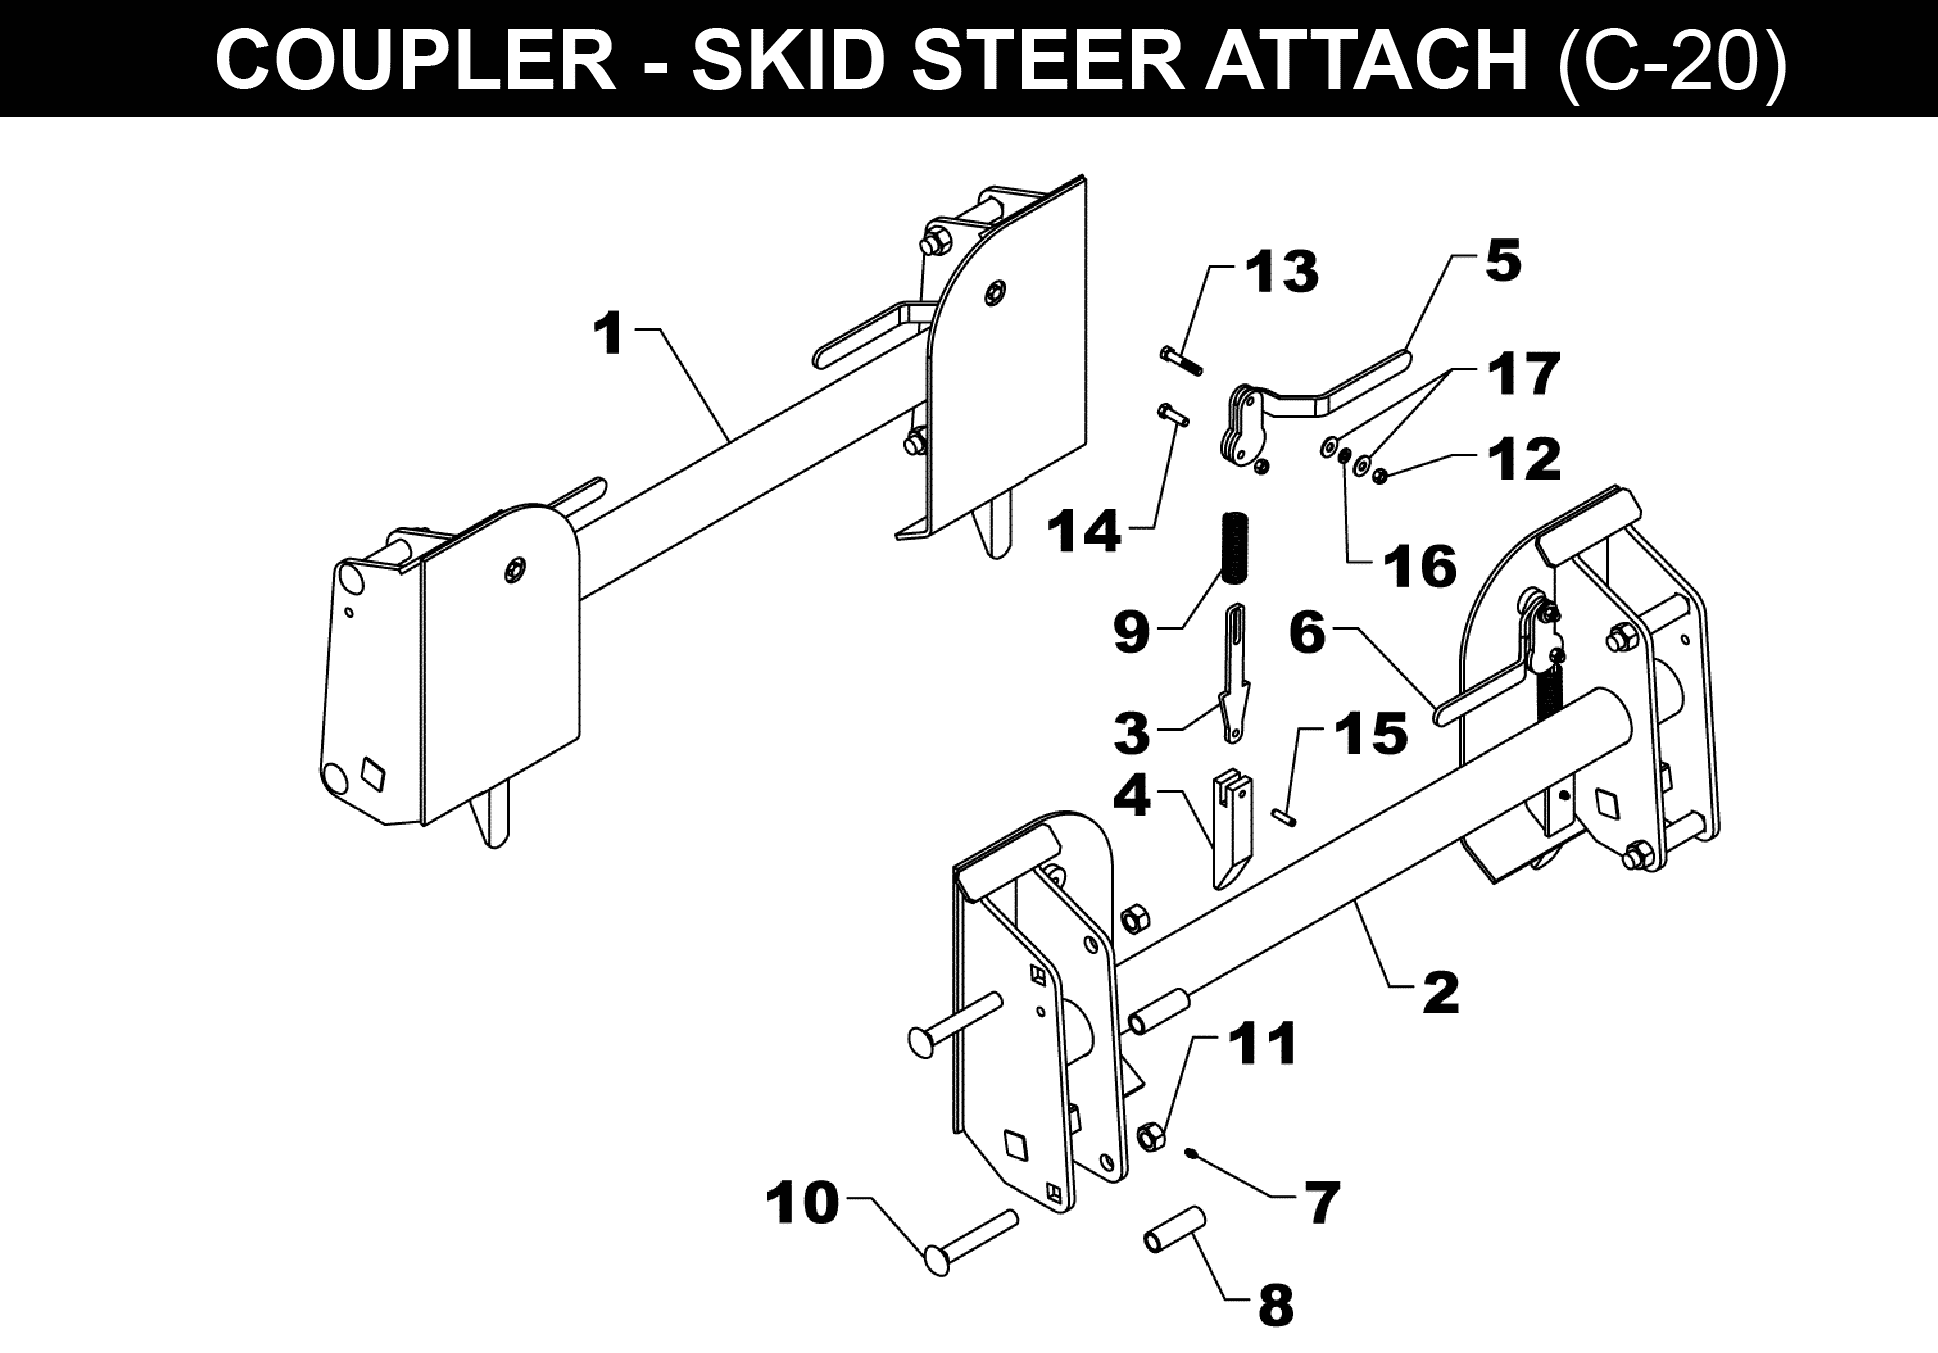 OPTIONAL SKID STEER COUPLER - C-20